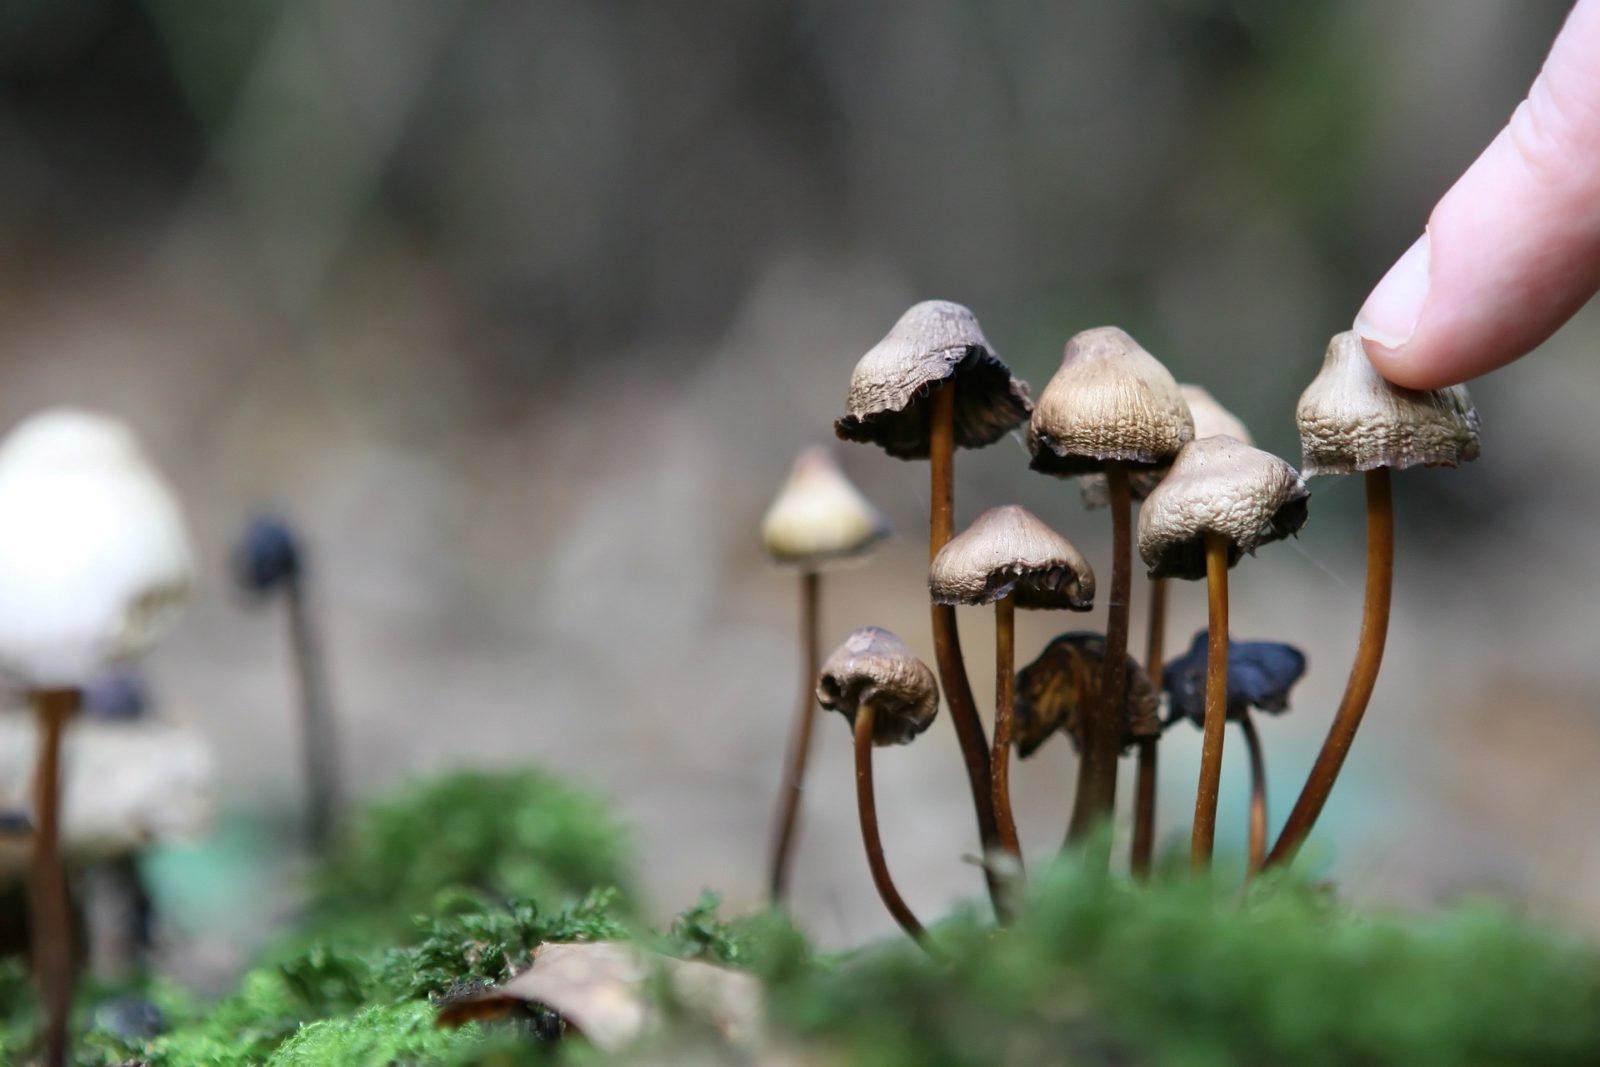 Галлюциногенные грибы — мухомор, серная голова, мицена чистая, спорынья пурпурная, видео